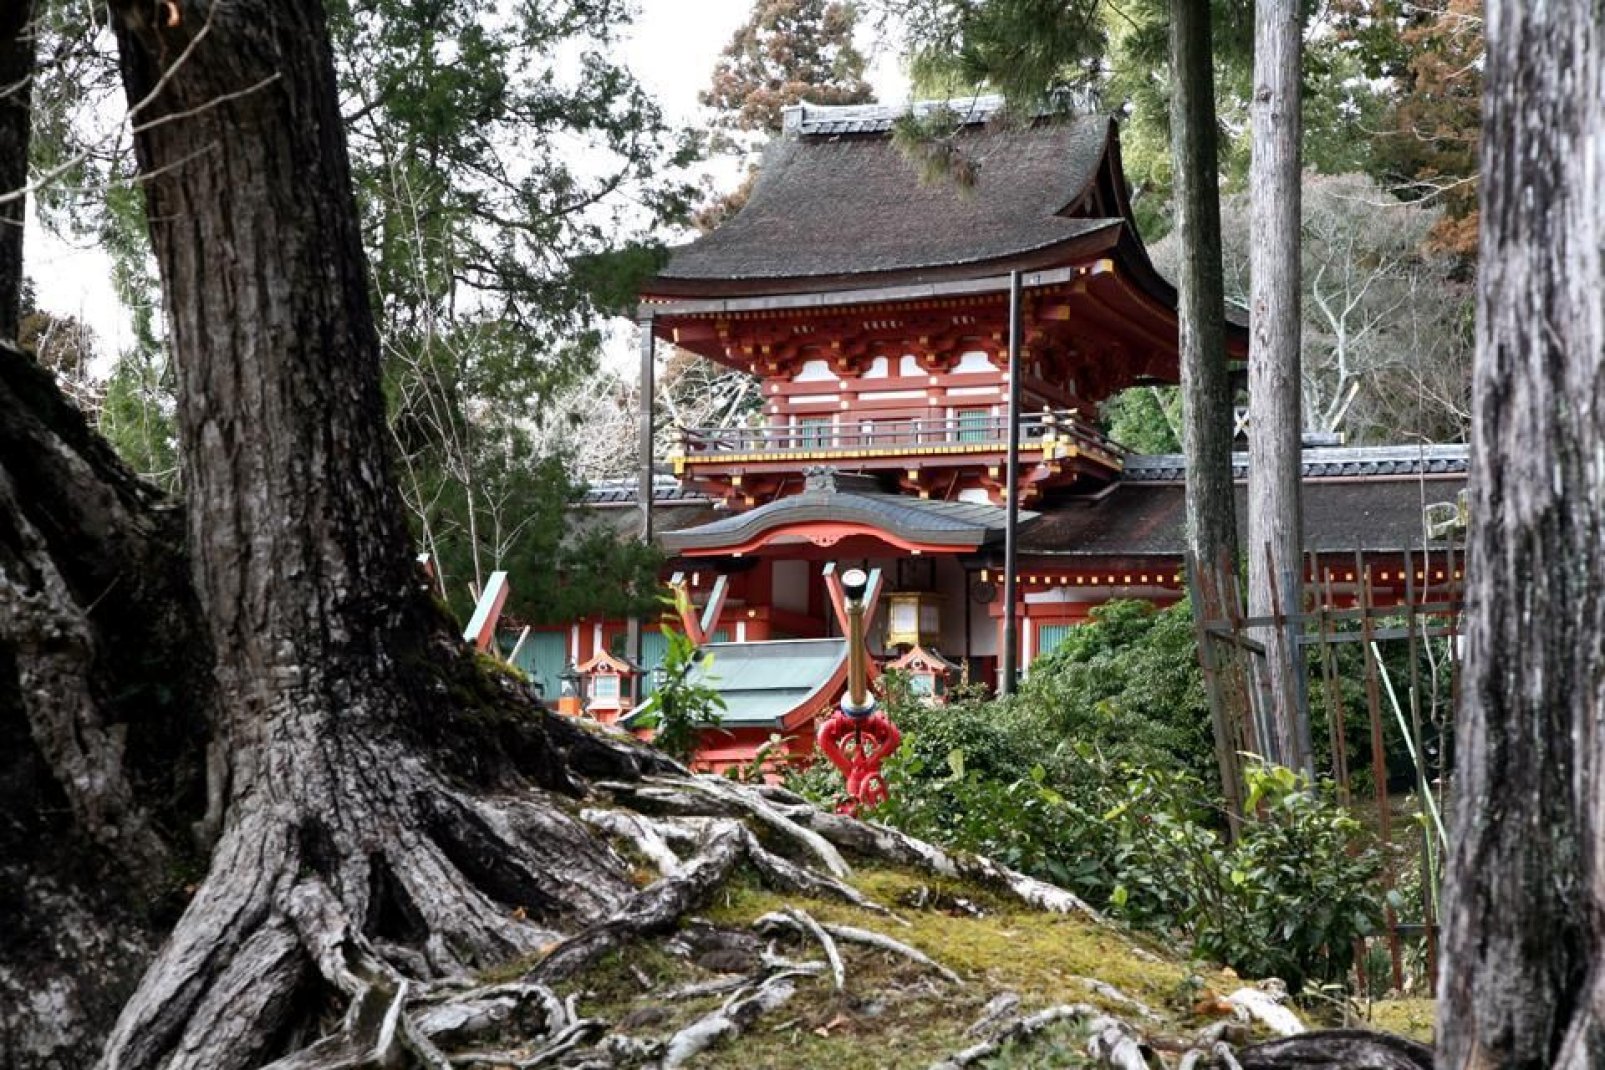 Avant Tokyo et Kyoto, Nara fut la première capitale du pays au VIIIe siècle.